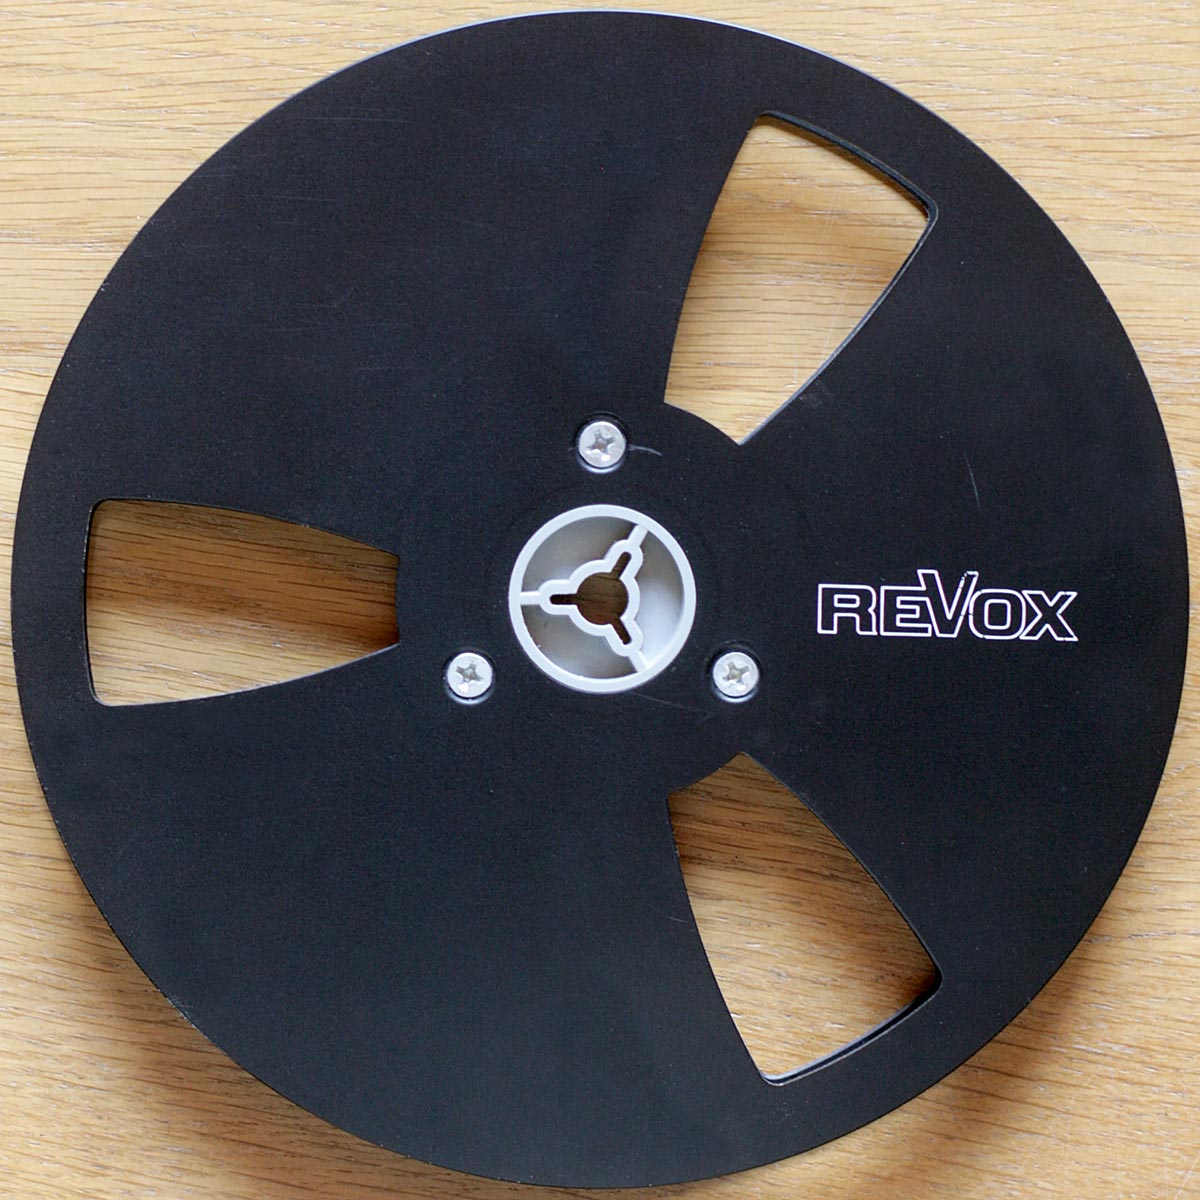 Revox • Bobine métallique aluminium vide – noire • Empty aluminium metal tape reel – black • Leere Aluminium-Metallspule – schwarz • Ø 18 cm • Occasion • Used • Gebraucht